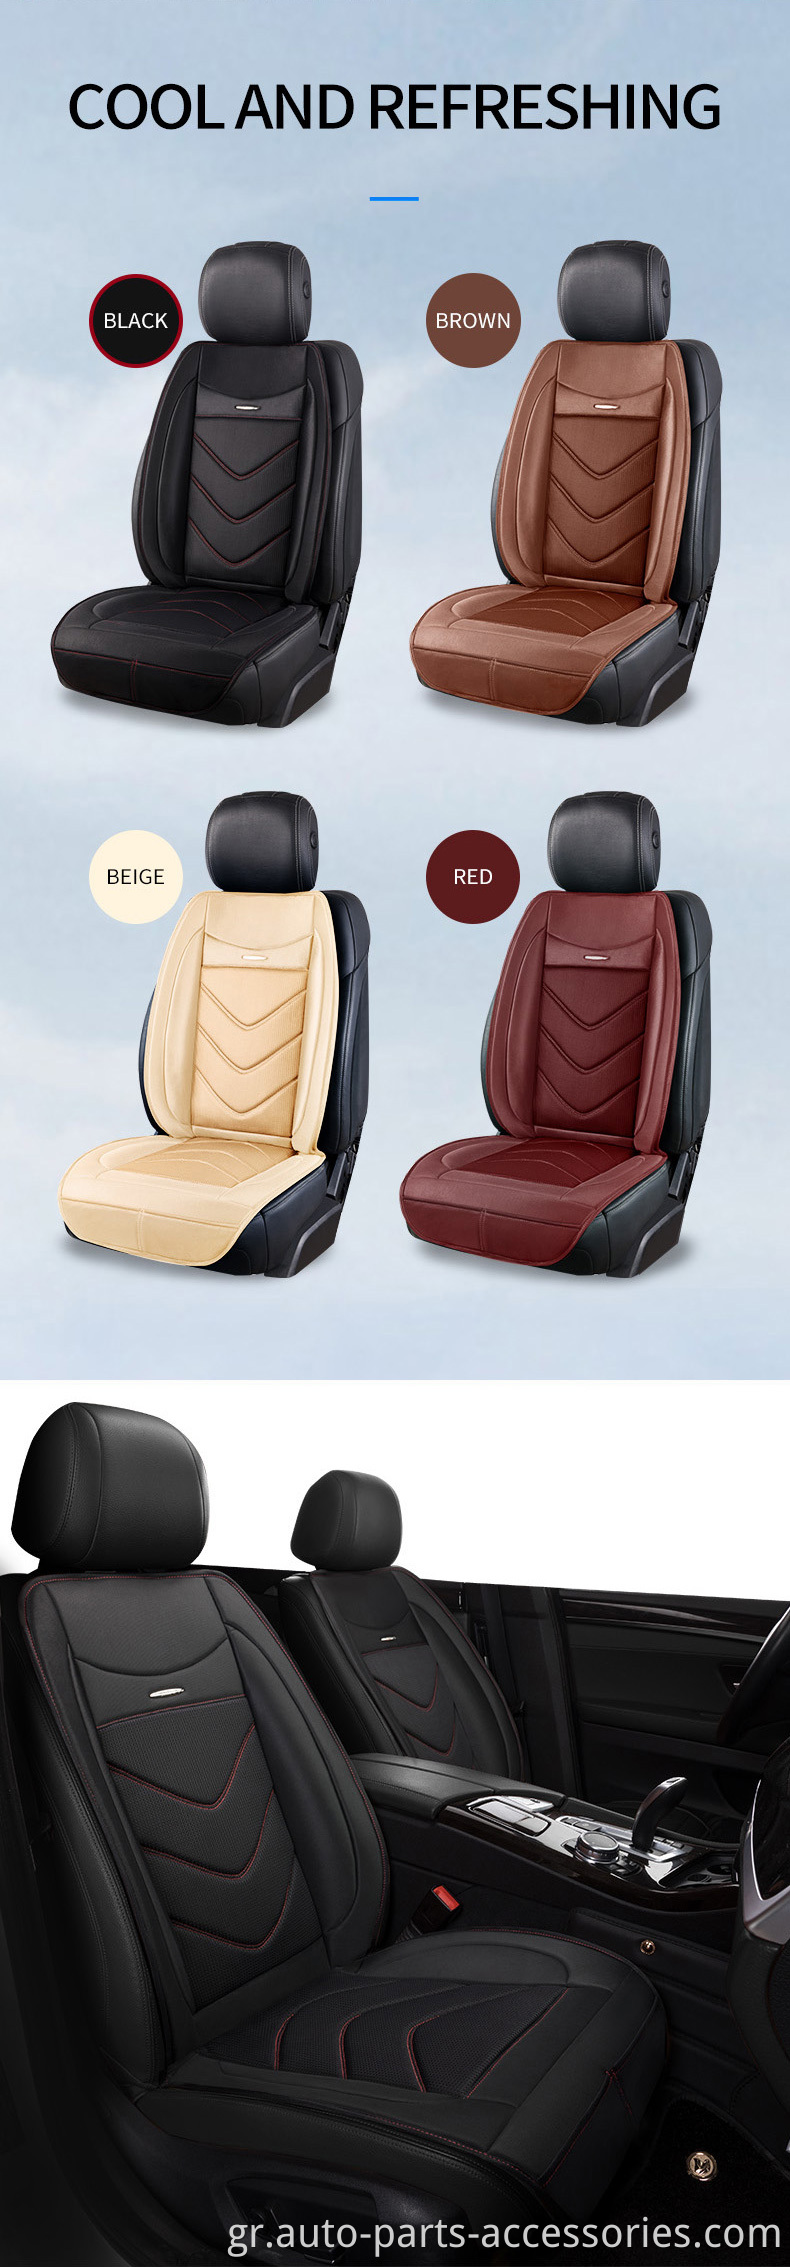 Μαξιλάρι καθίσματος αυτοκινήτου ψύξης αέρα, κάλυμμα καθίσματος αυτοκινήτου, μαξιλάρι κάθισμα ψύξης αυτοκινήτου